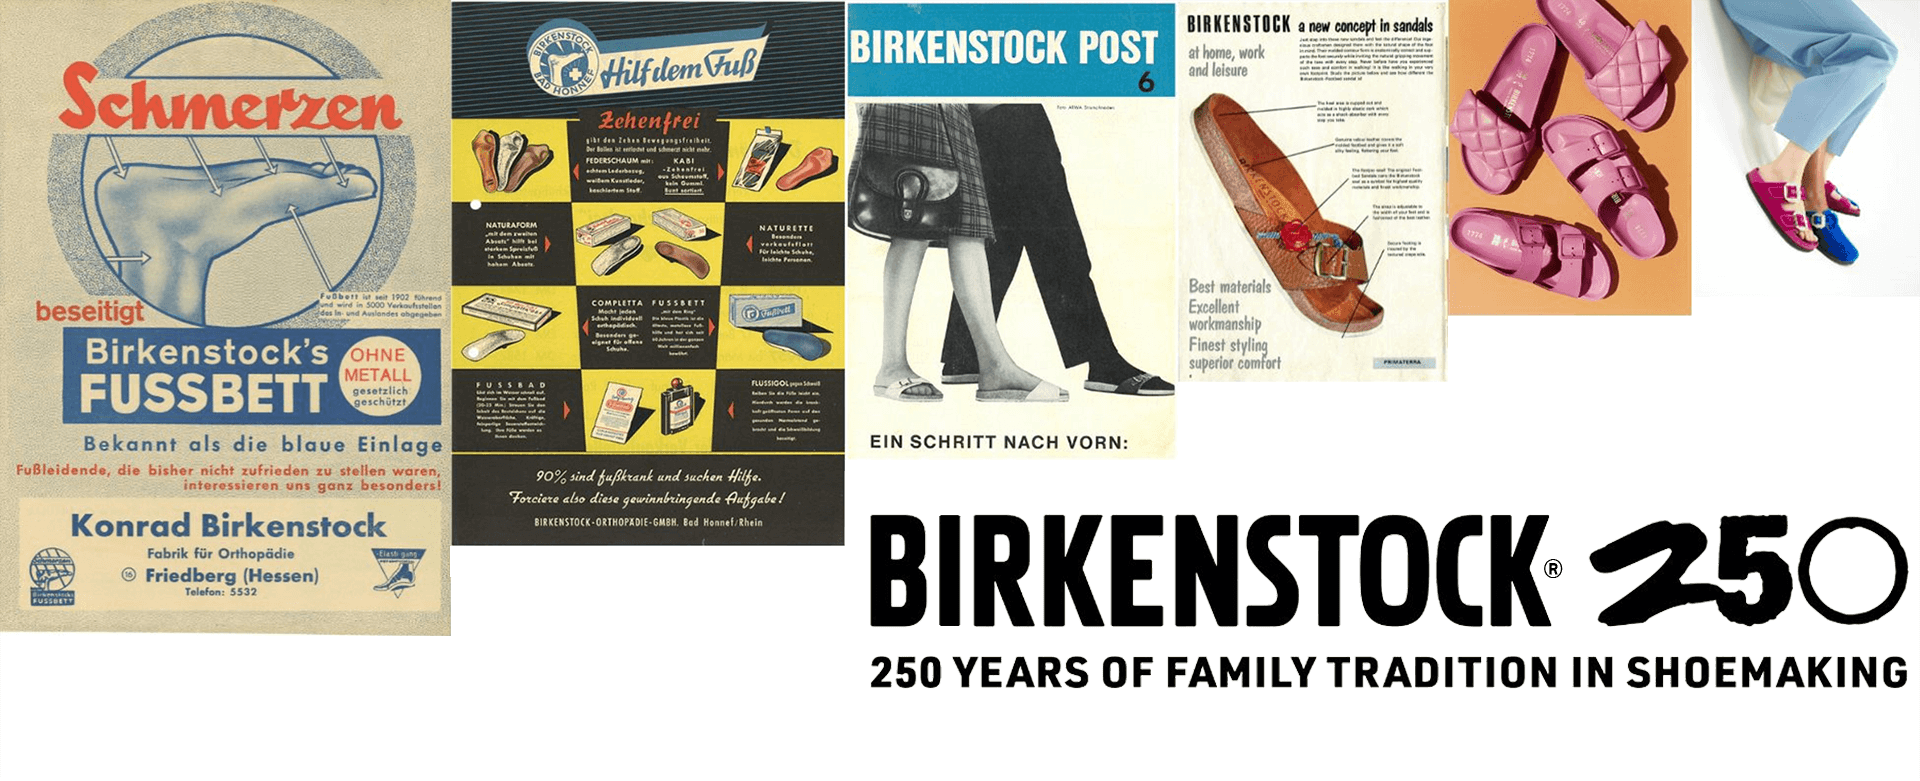 Birkenstock 250